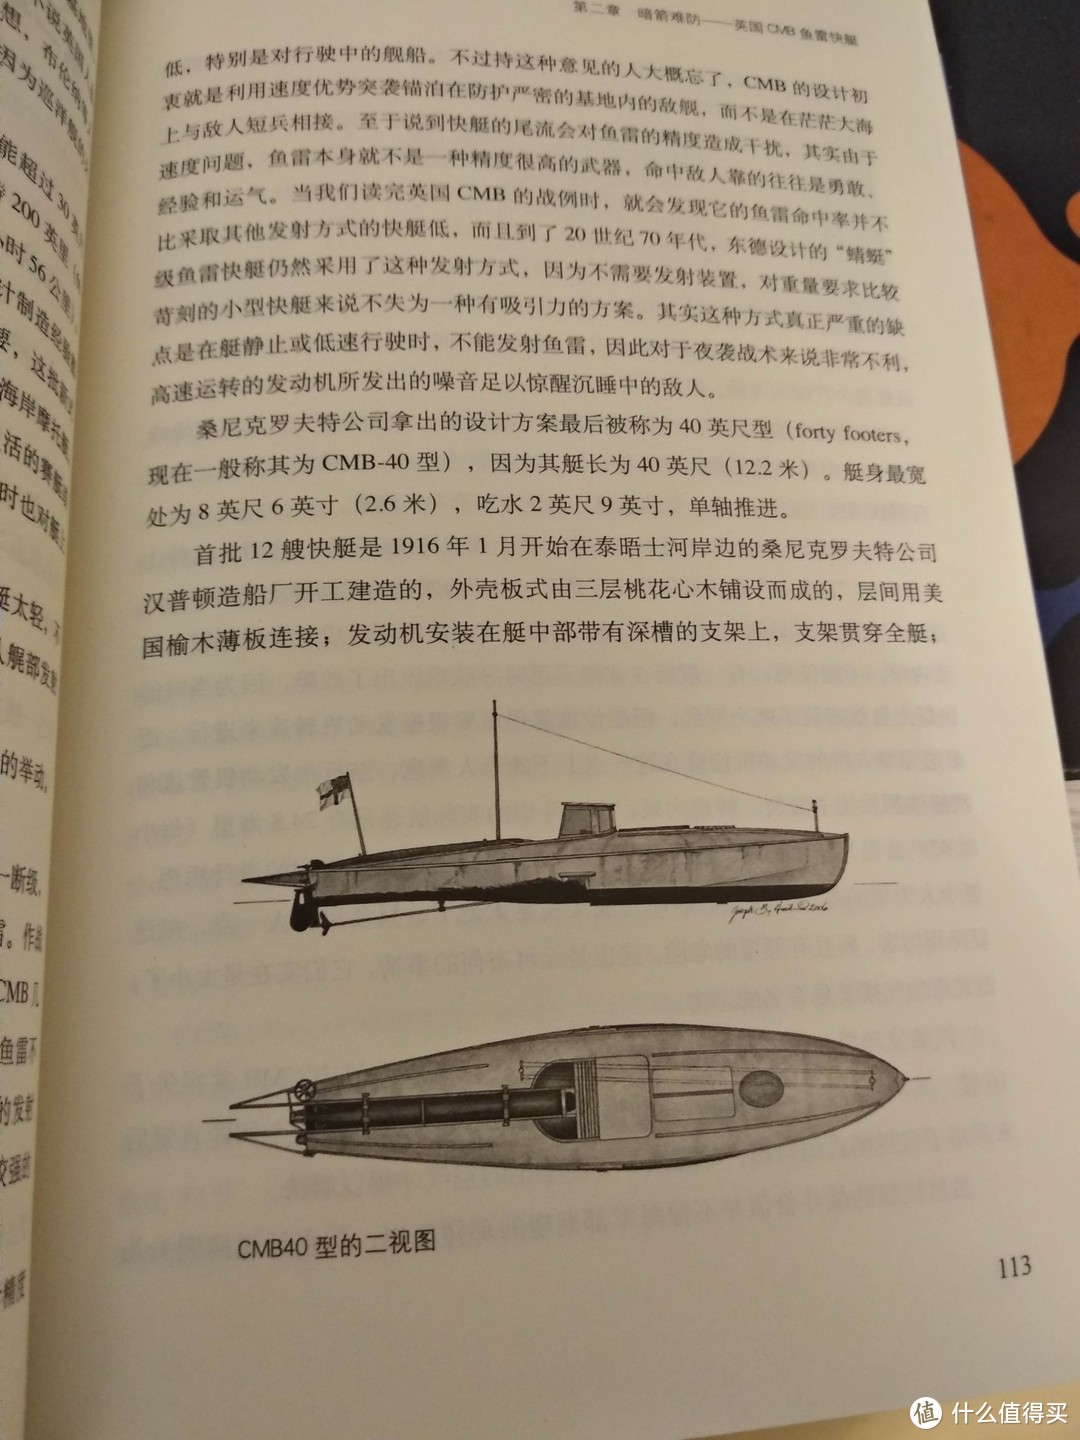 总感觉缺点什么的《世界鱼雷艇战史》购买读后小评